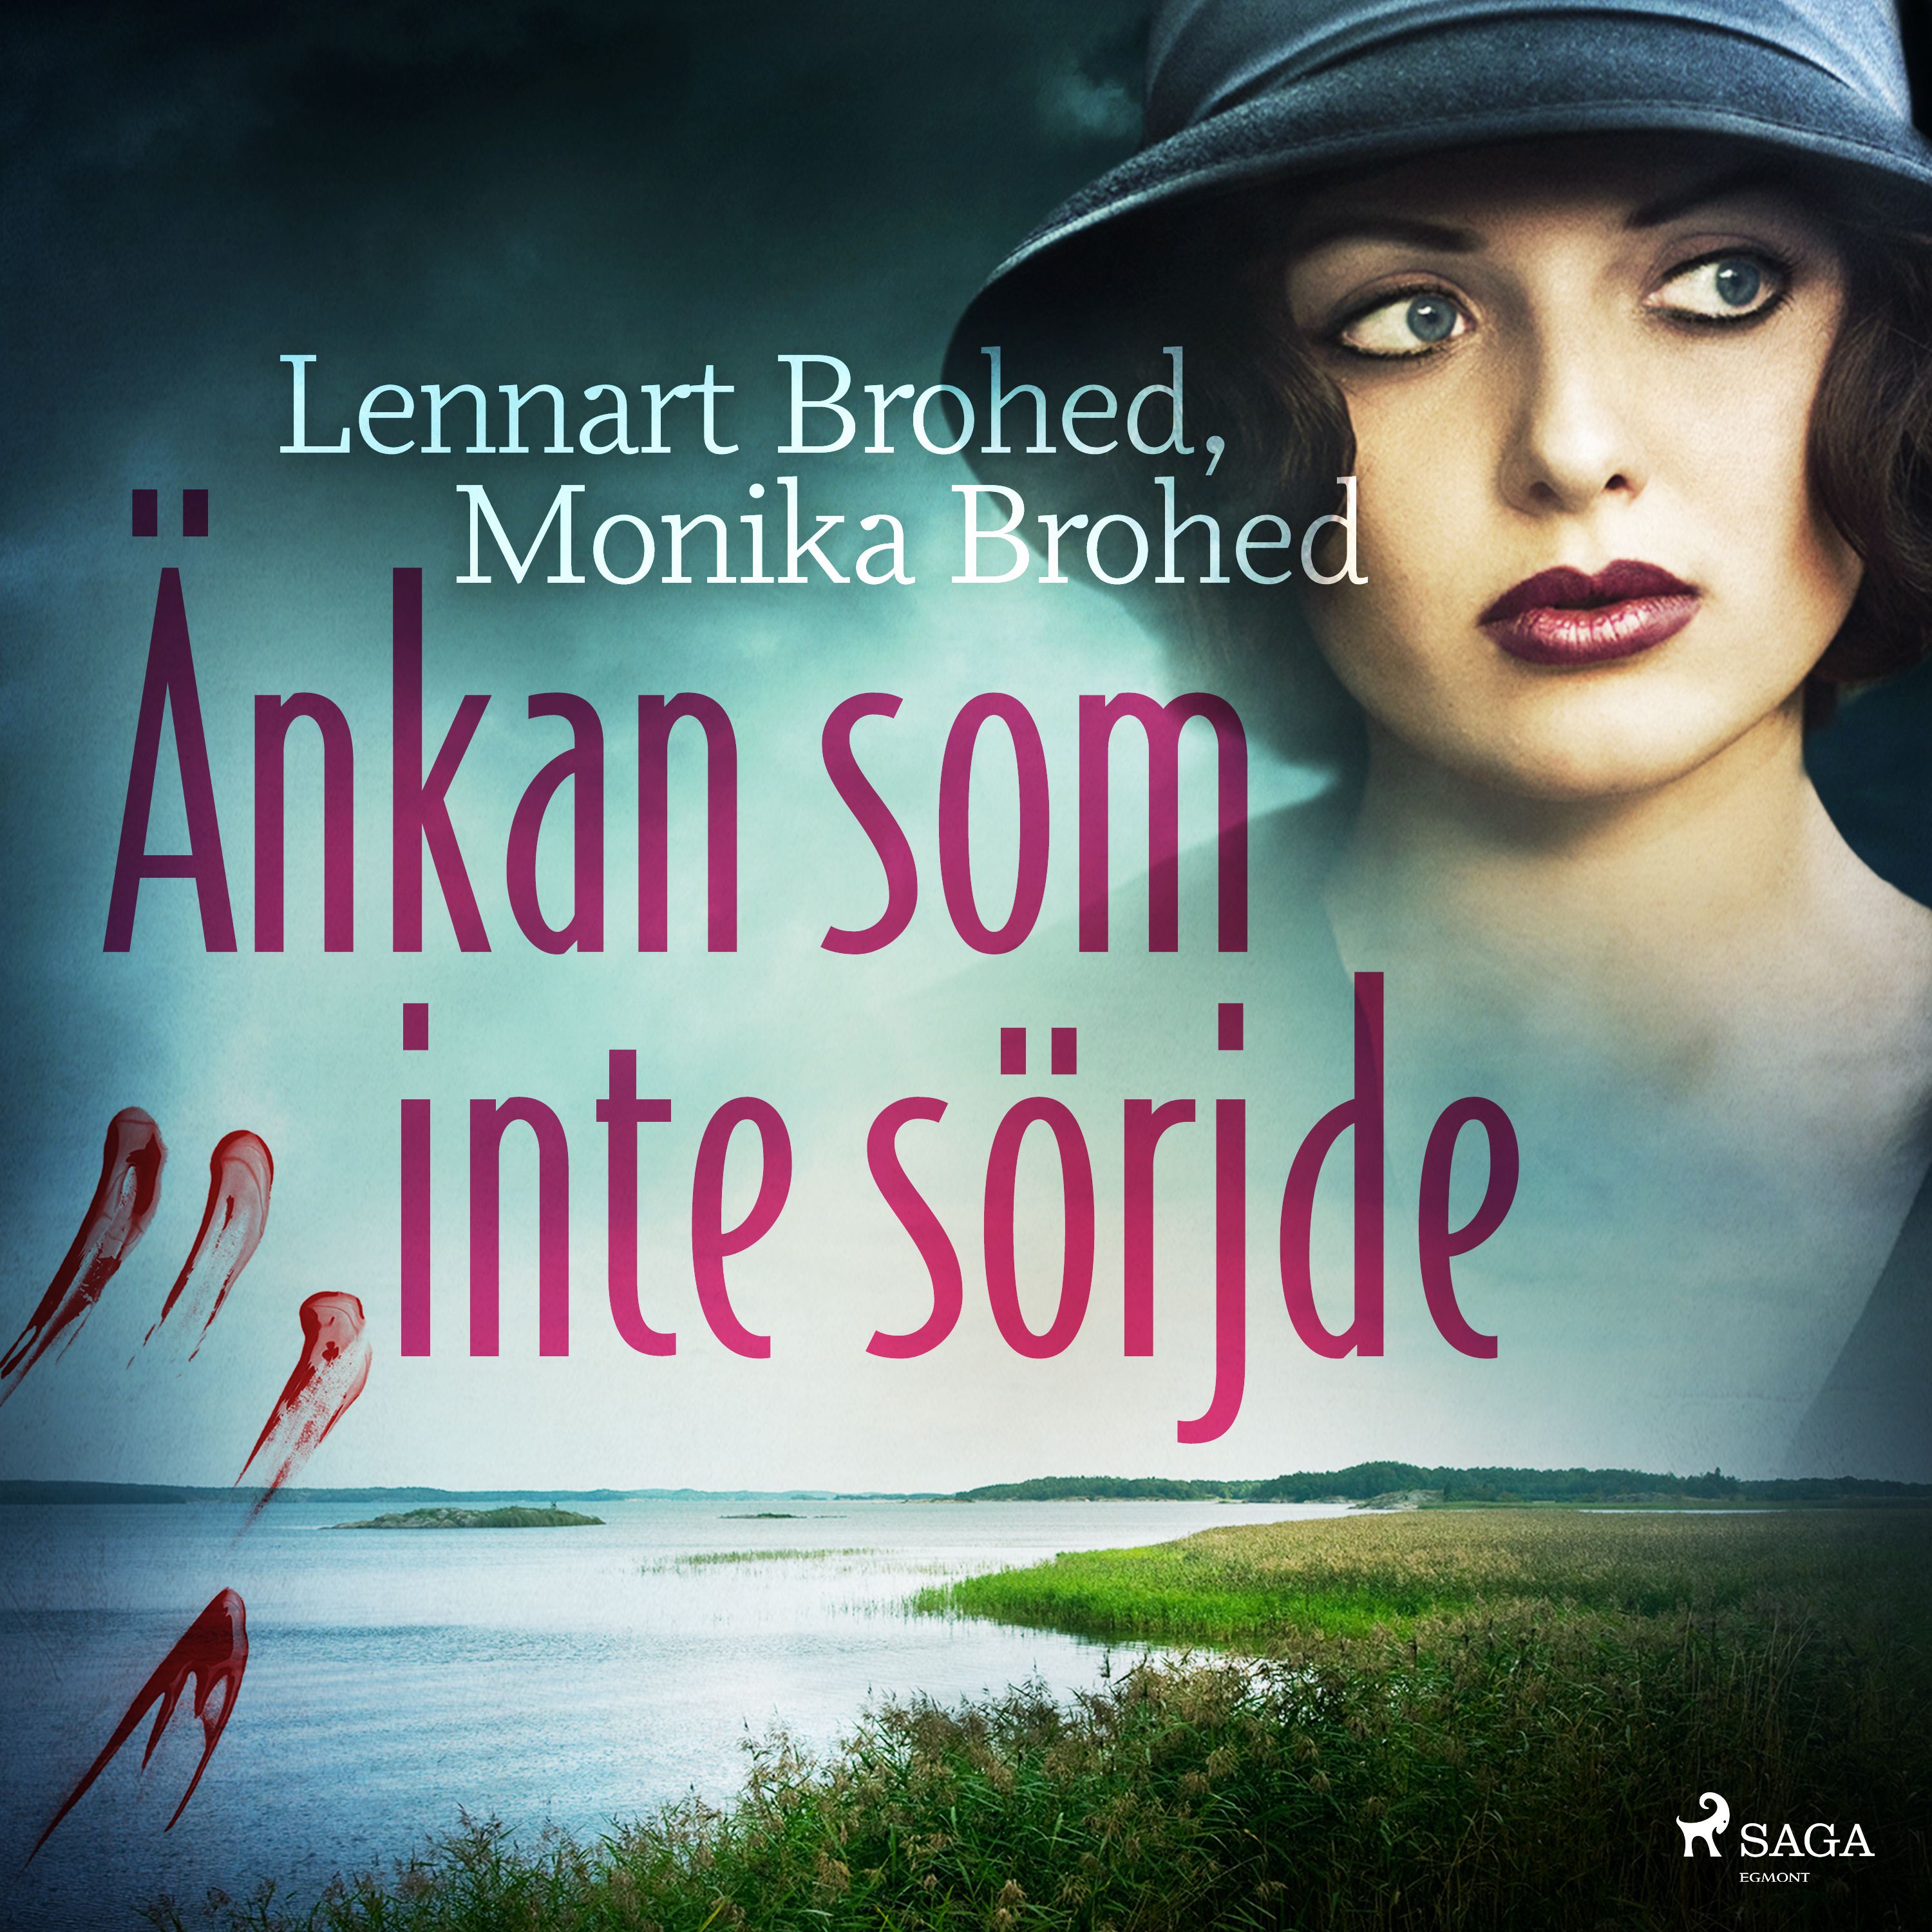 Änkan som inte sörjde, ljudbok av Lennart Brohed, Monika Brohed